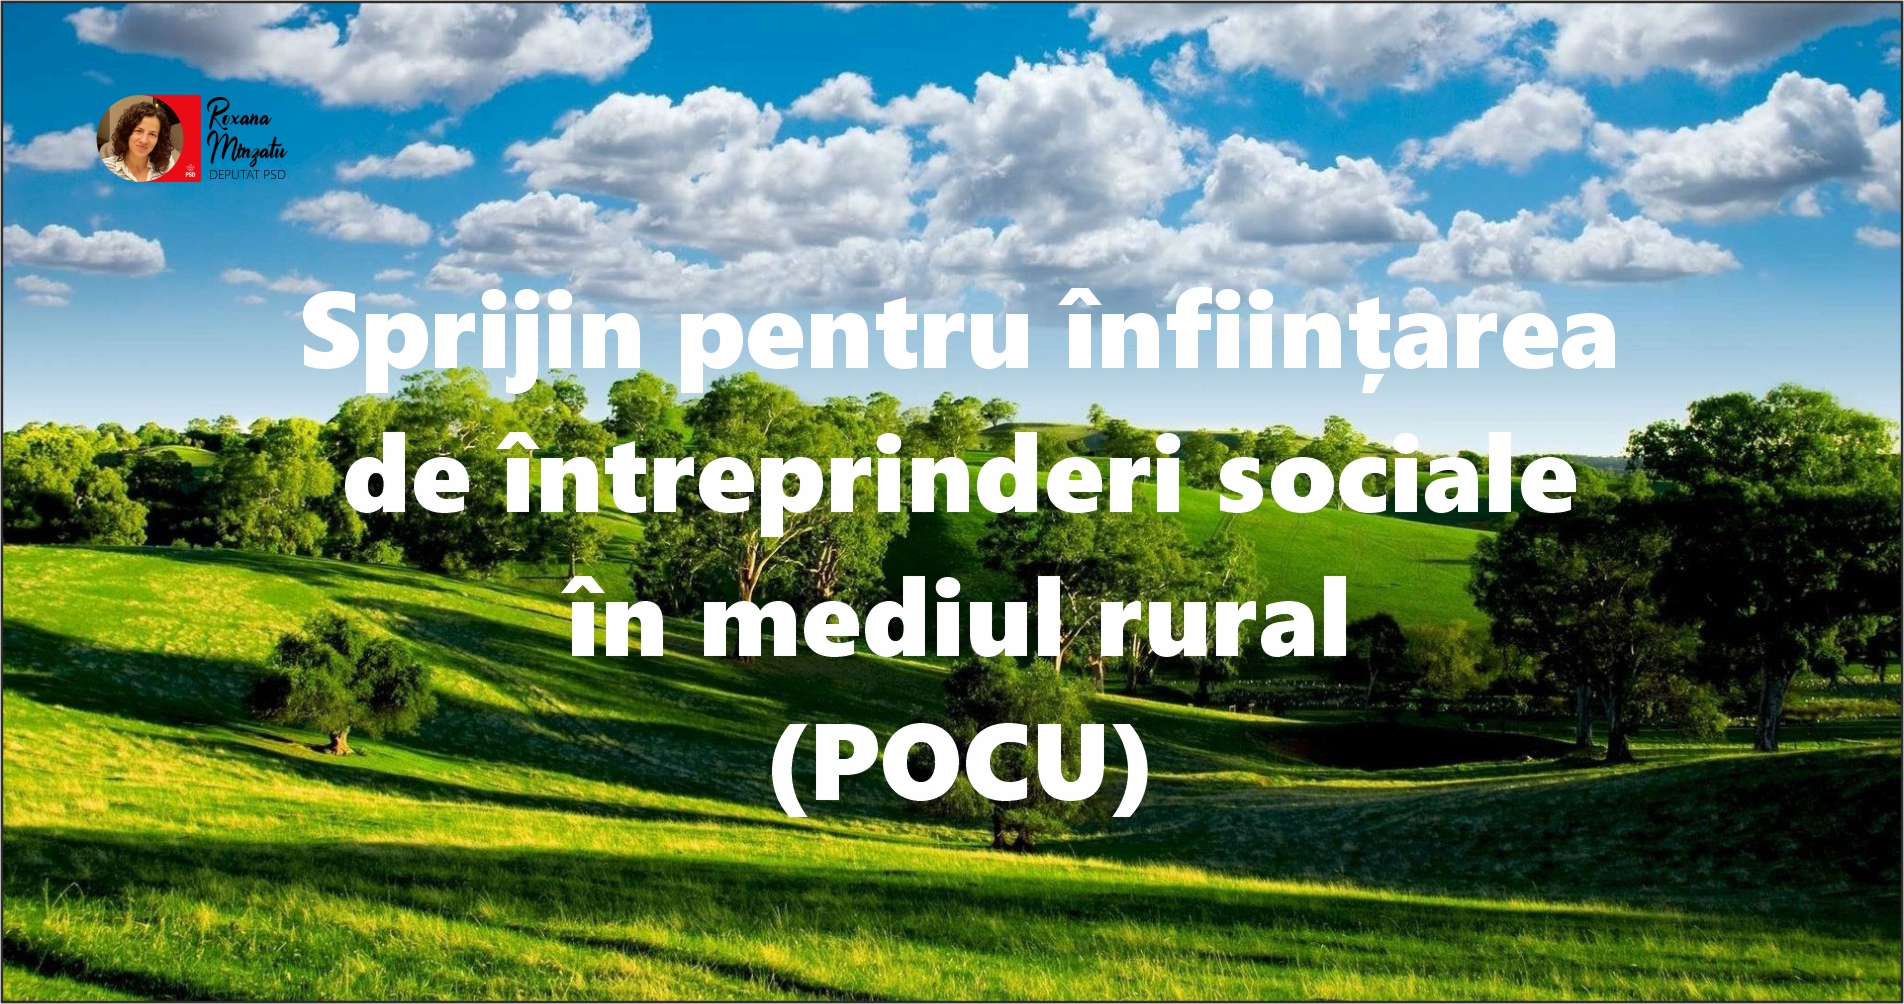 Sprijin pentru înființarea de întreprinderi sociale în mediul rural (POCU)